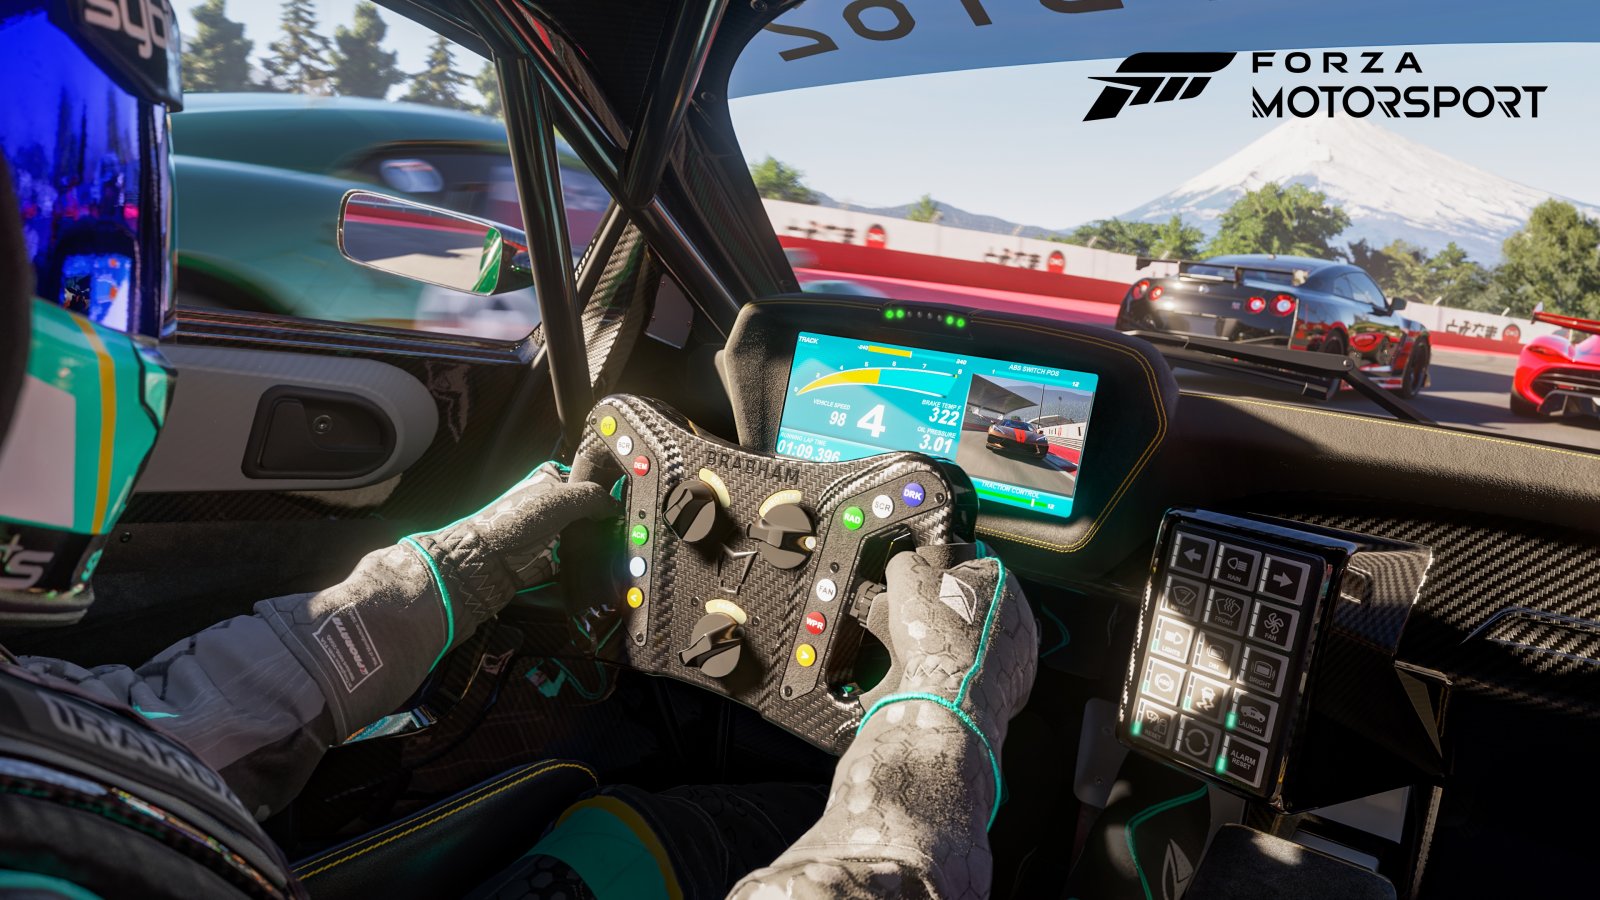 Forza Motorsport, la recensione dell'ultimo gioco di guida targato Microsoft